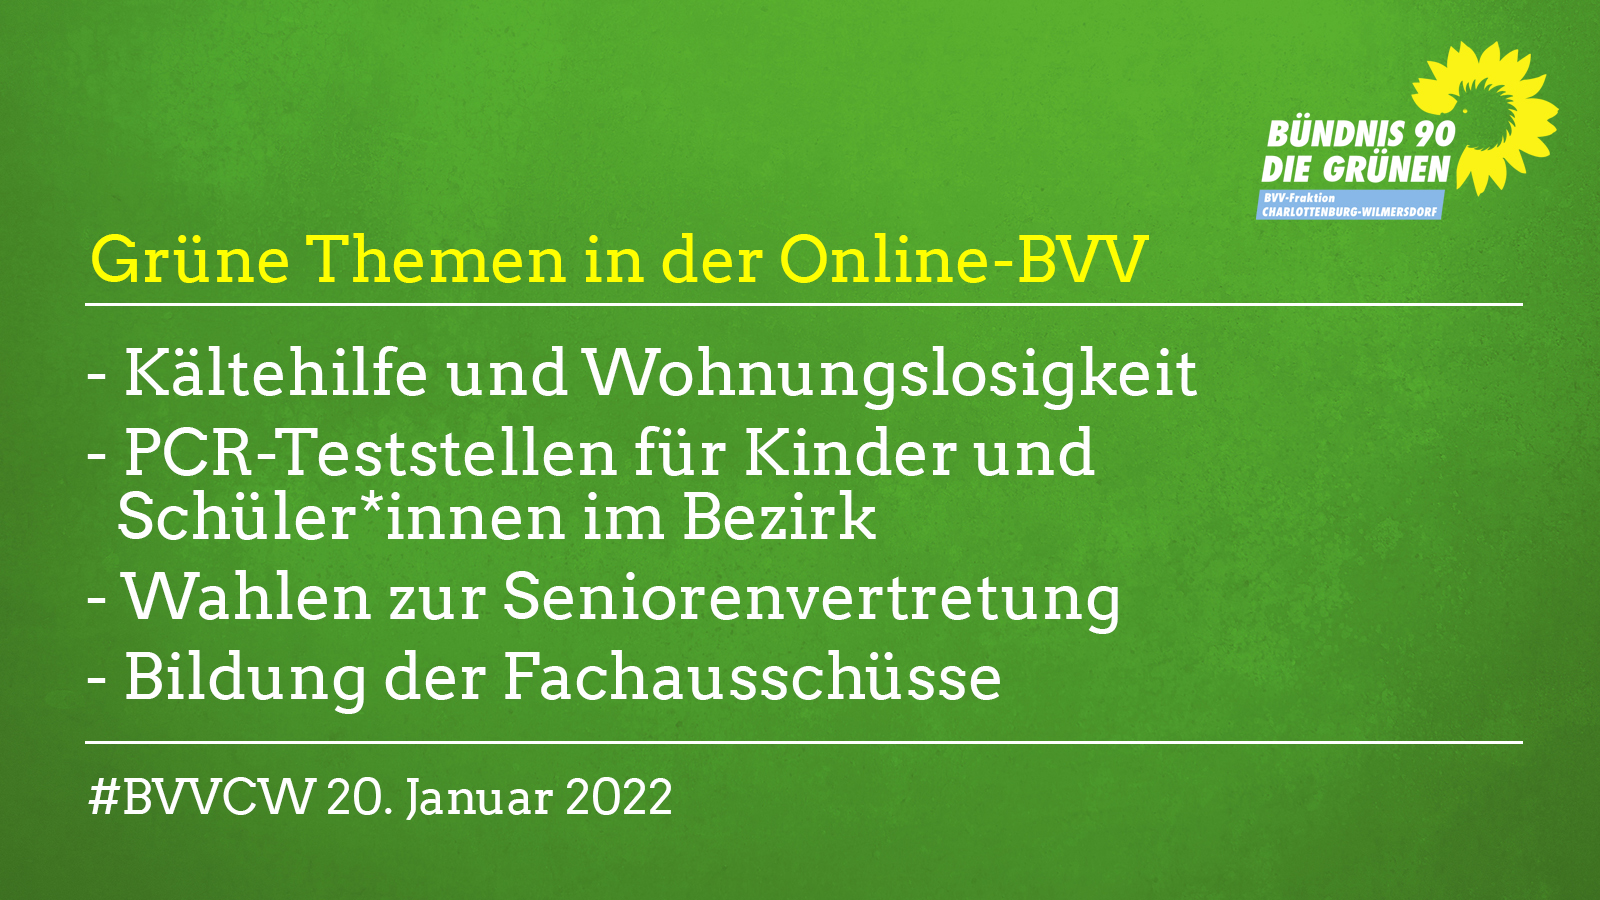 Grüne Themen in der Online-BVV am 20.1.22